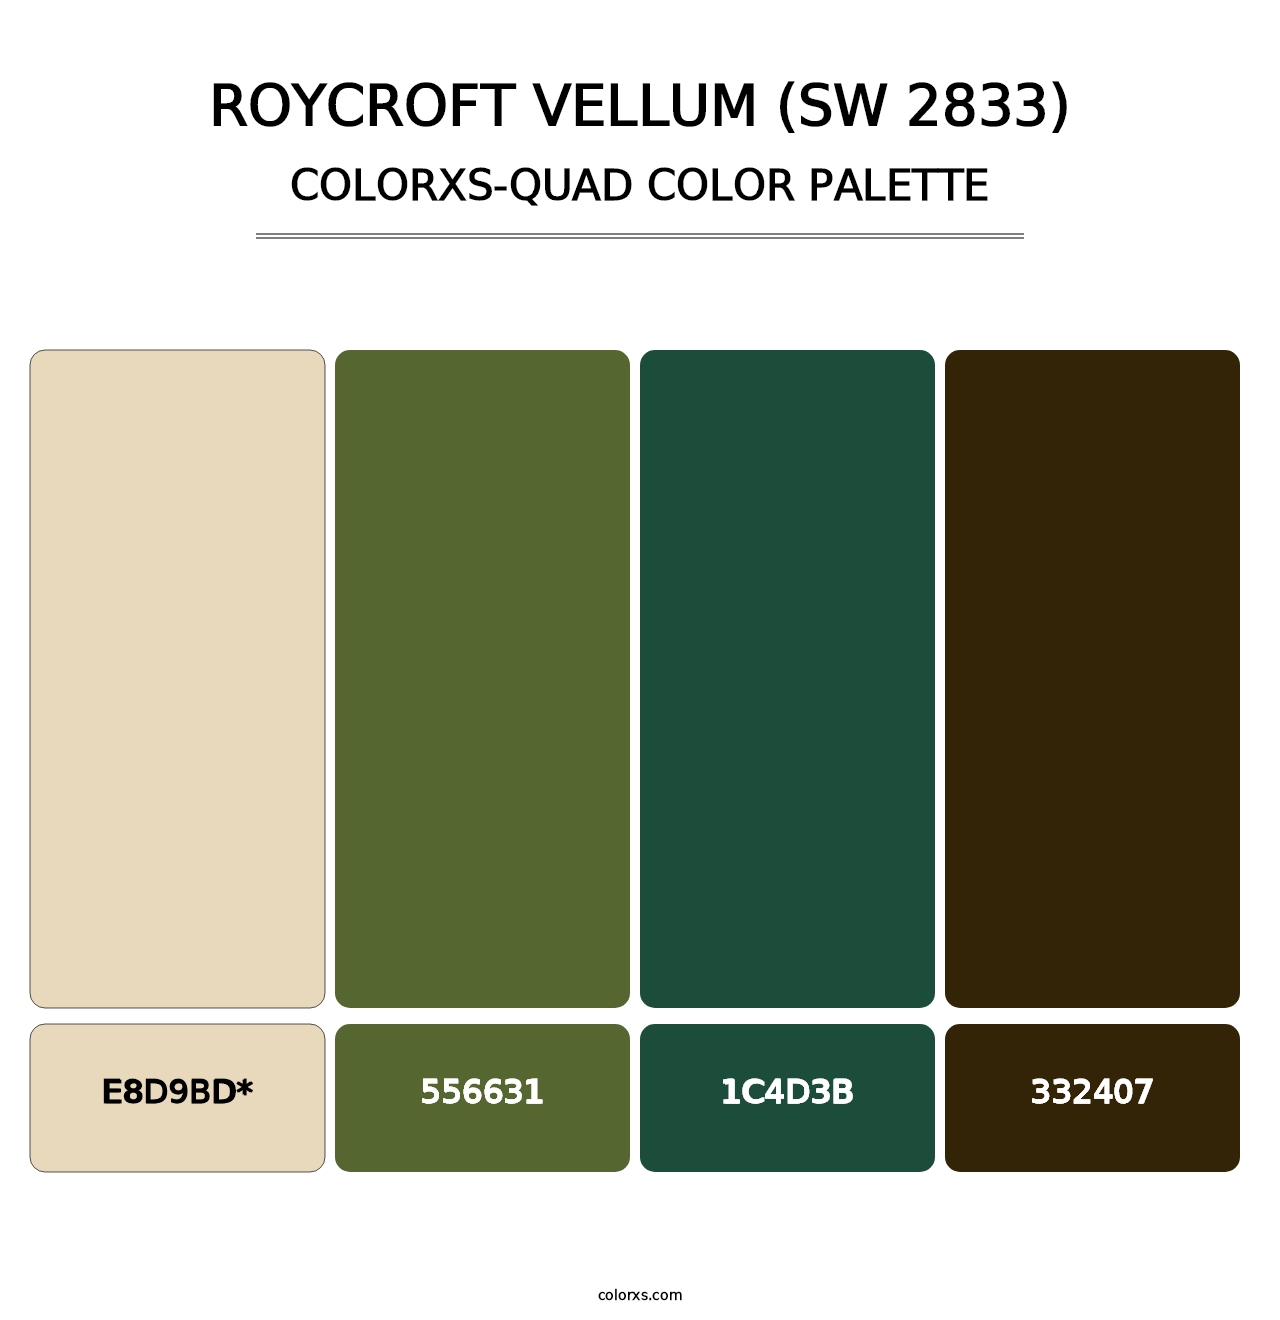 Roycroft Vellum (SW 2833) - Colorxs Quad Palette